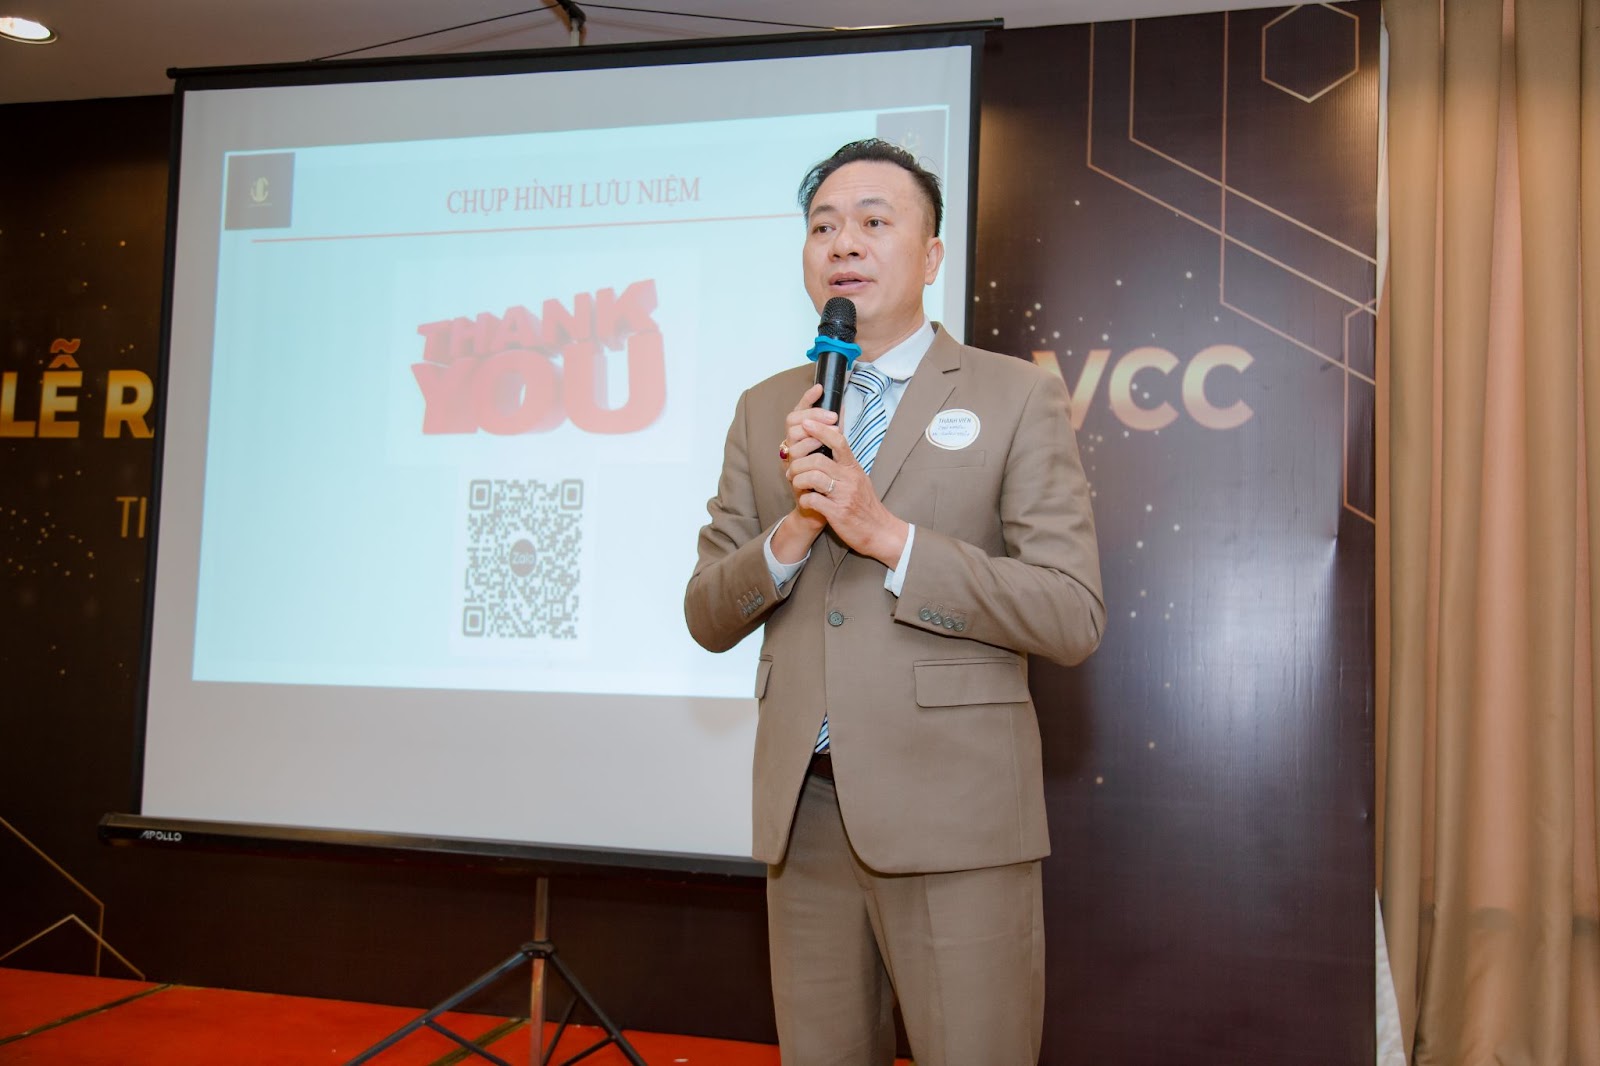 Lễ ra mắt cộng đồng VCC - Chương trình kết nối các CEO Việt Nam - 1